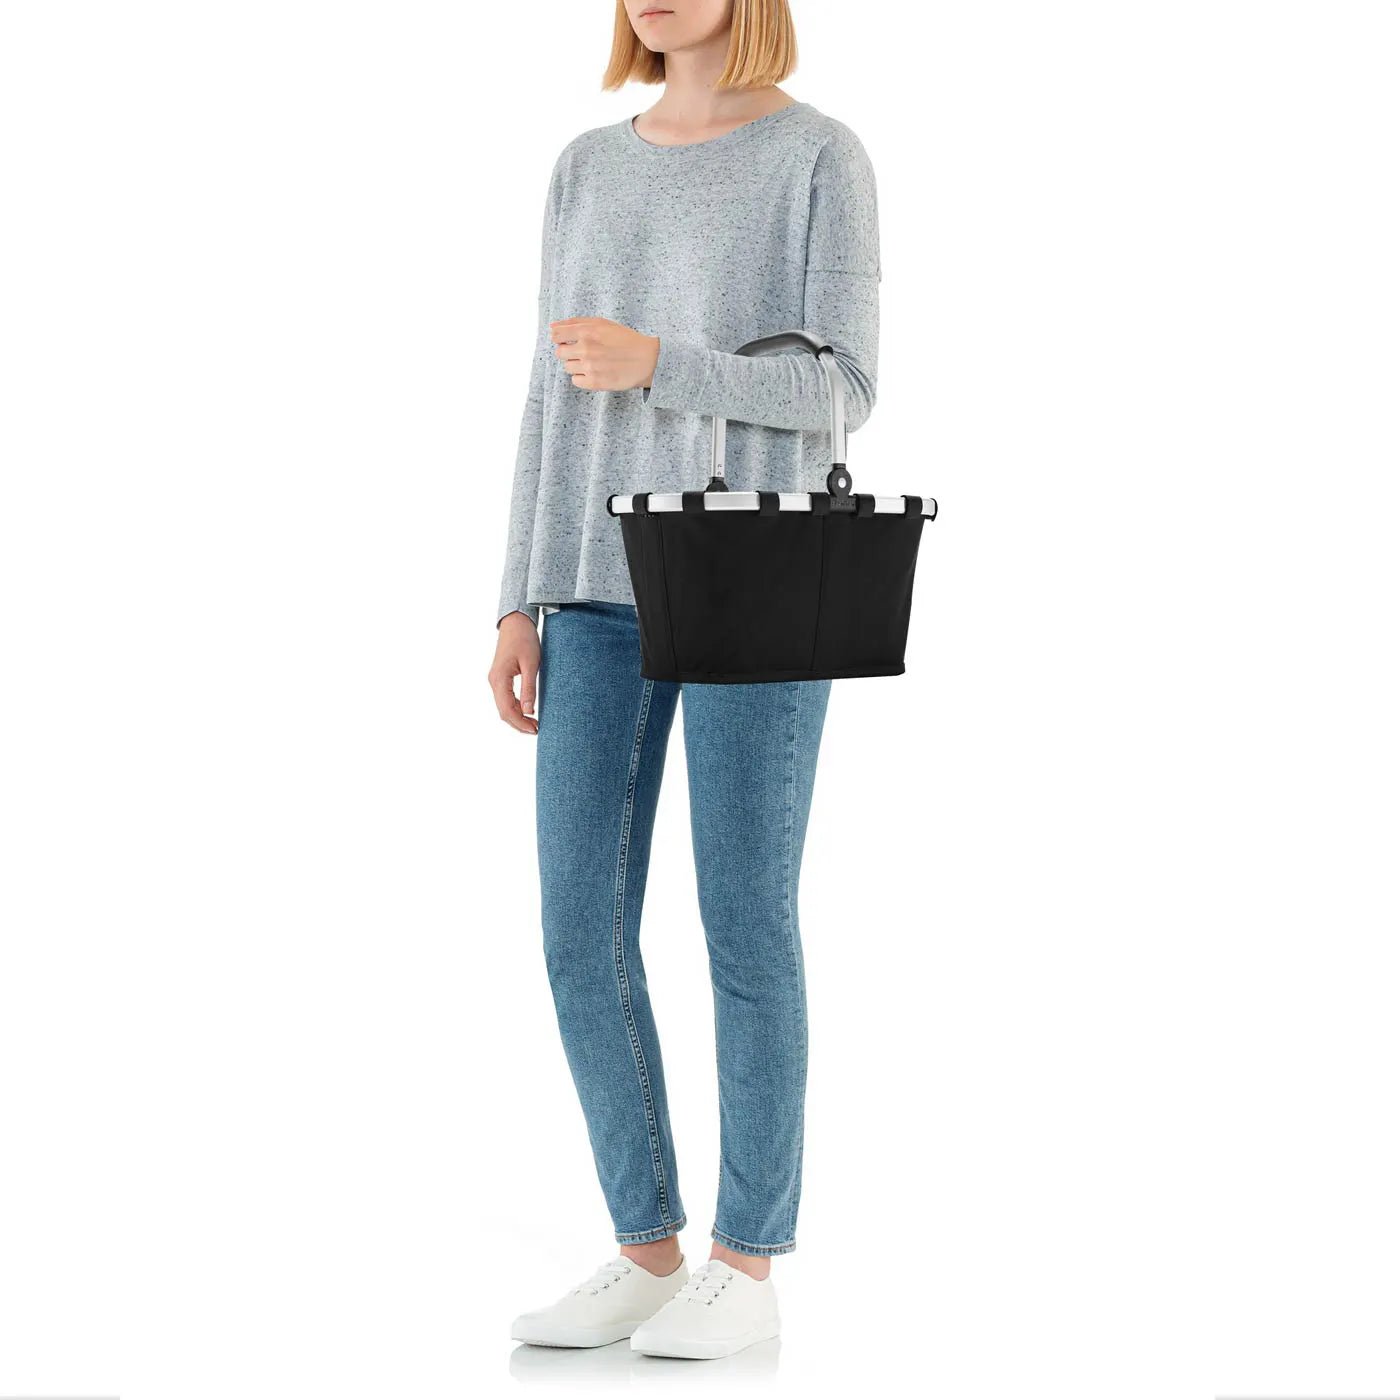 Reisenthel Shopping Carrybag XS Kinder-Einkaufskorb 33 cm - dark blue